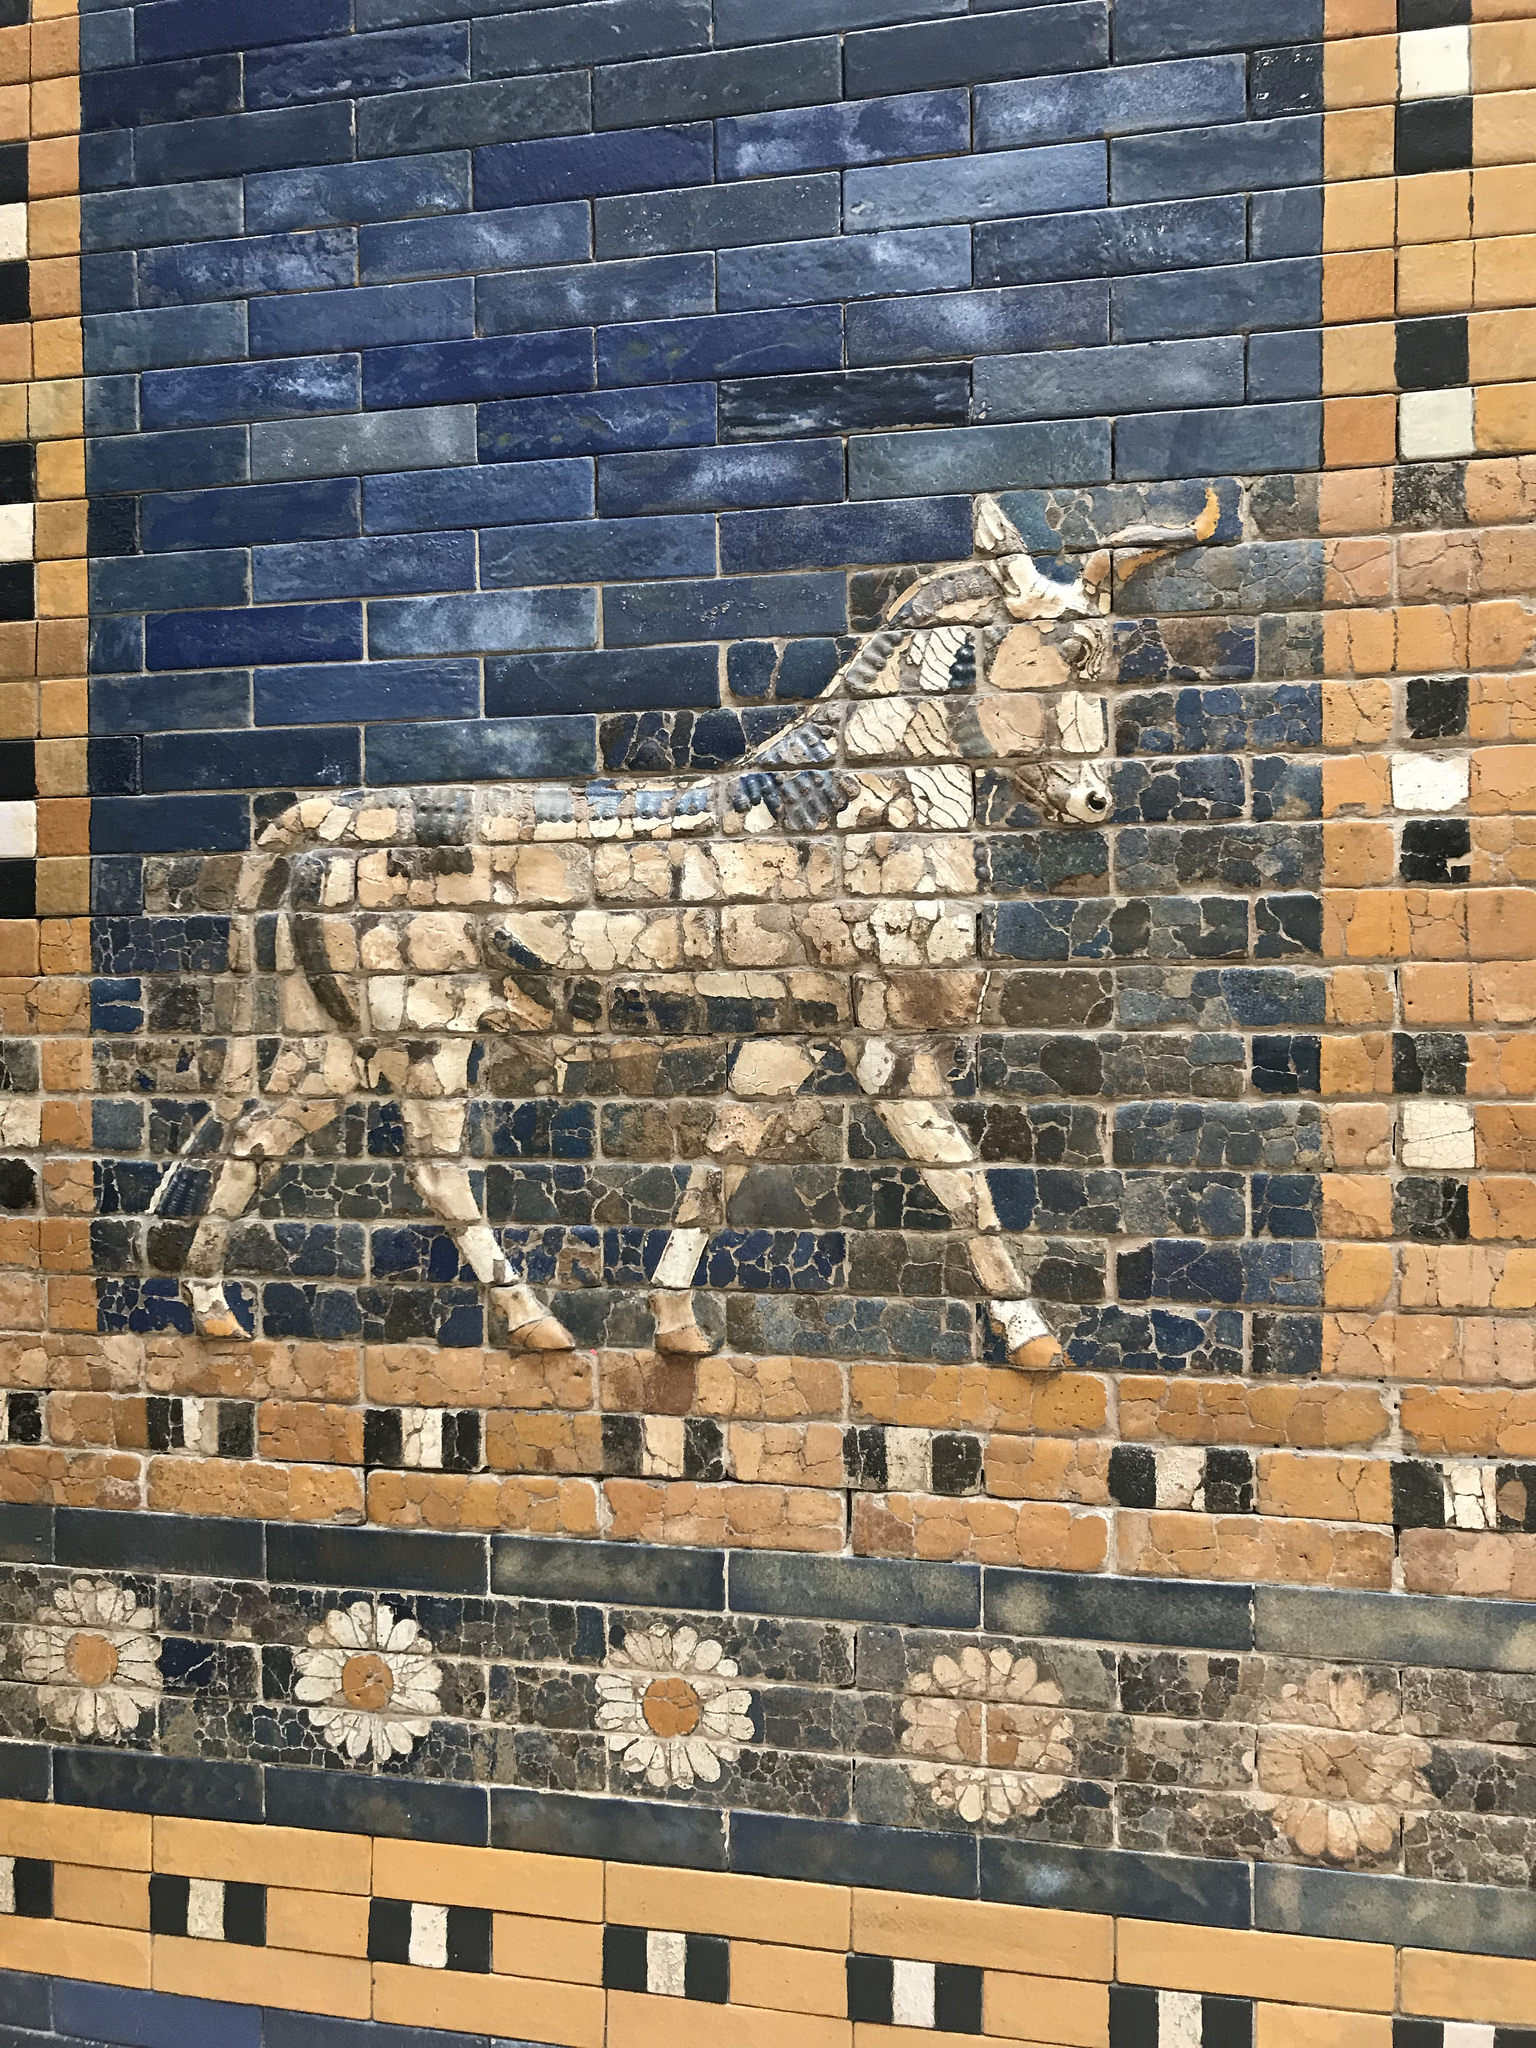 Ishtar Gate, Pergamon Museum